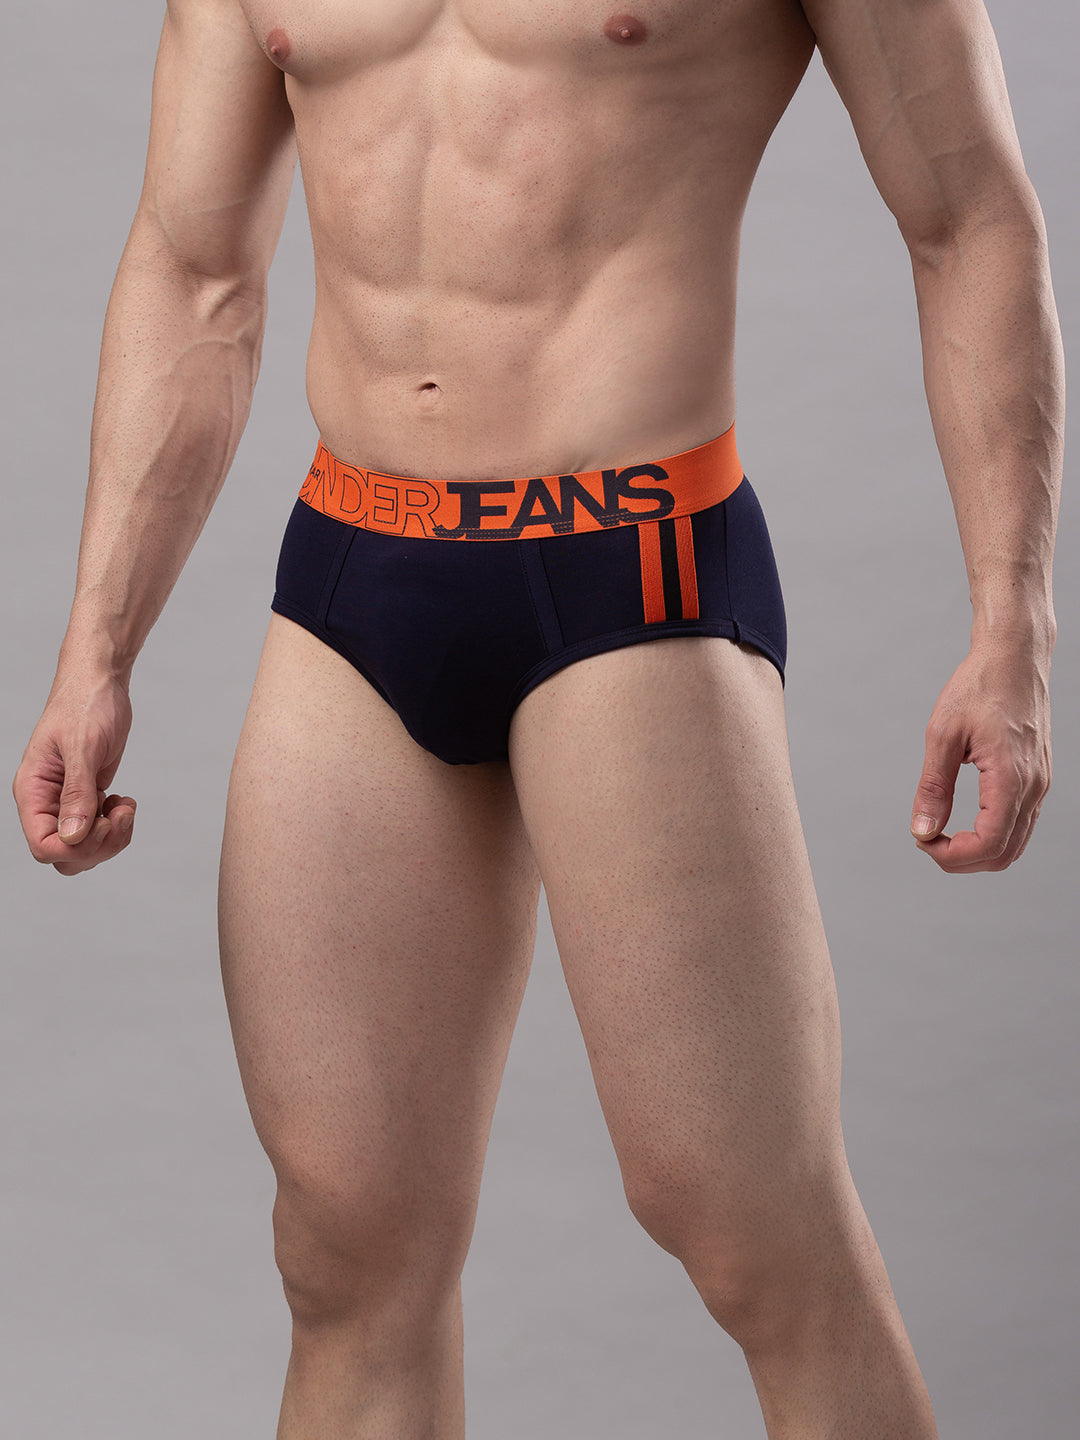 Men Premium Cotton Blend Navy-Orange Brief - (Pack of 2)- UnderJeans by Spykar